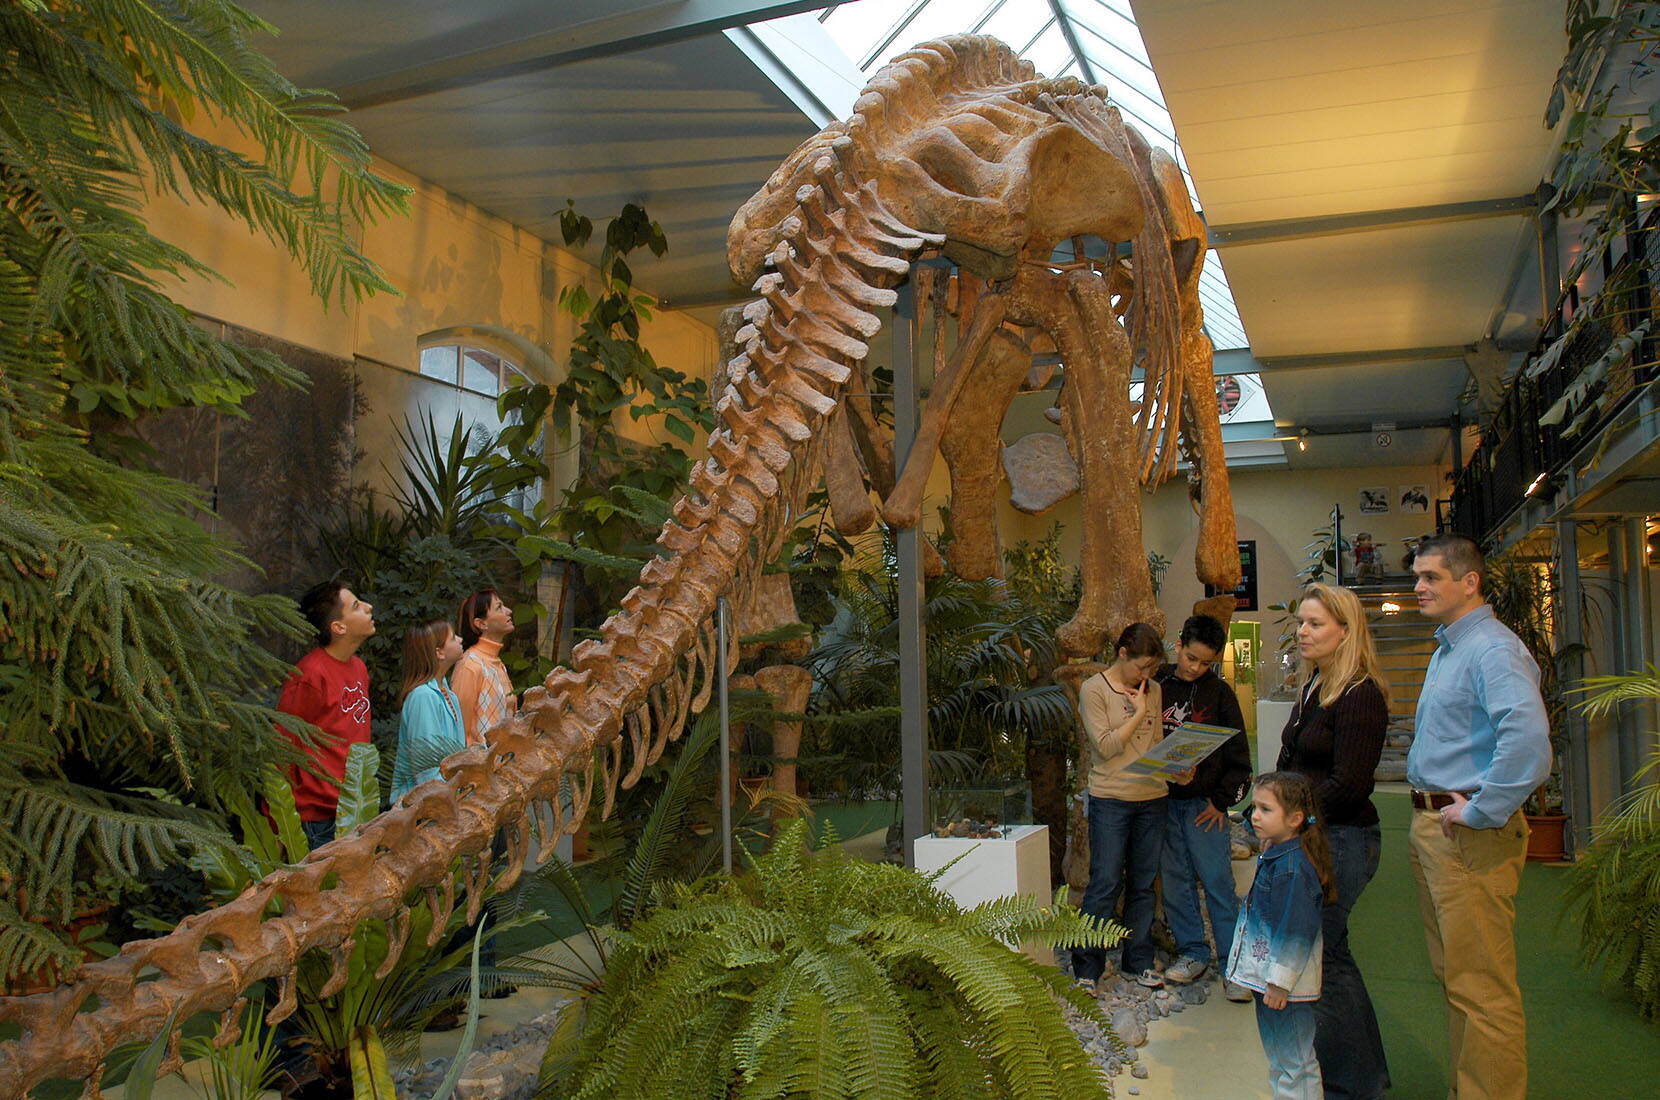 Excursion en famille au musée des dinosaures d'Aathal. Tu y apprendras tout ce que tu as toujours voulu savoir sur les dinosaures. S'il fait beau, il est possible de faire un barbecue et un pique-nique sans problème.